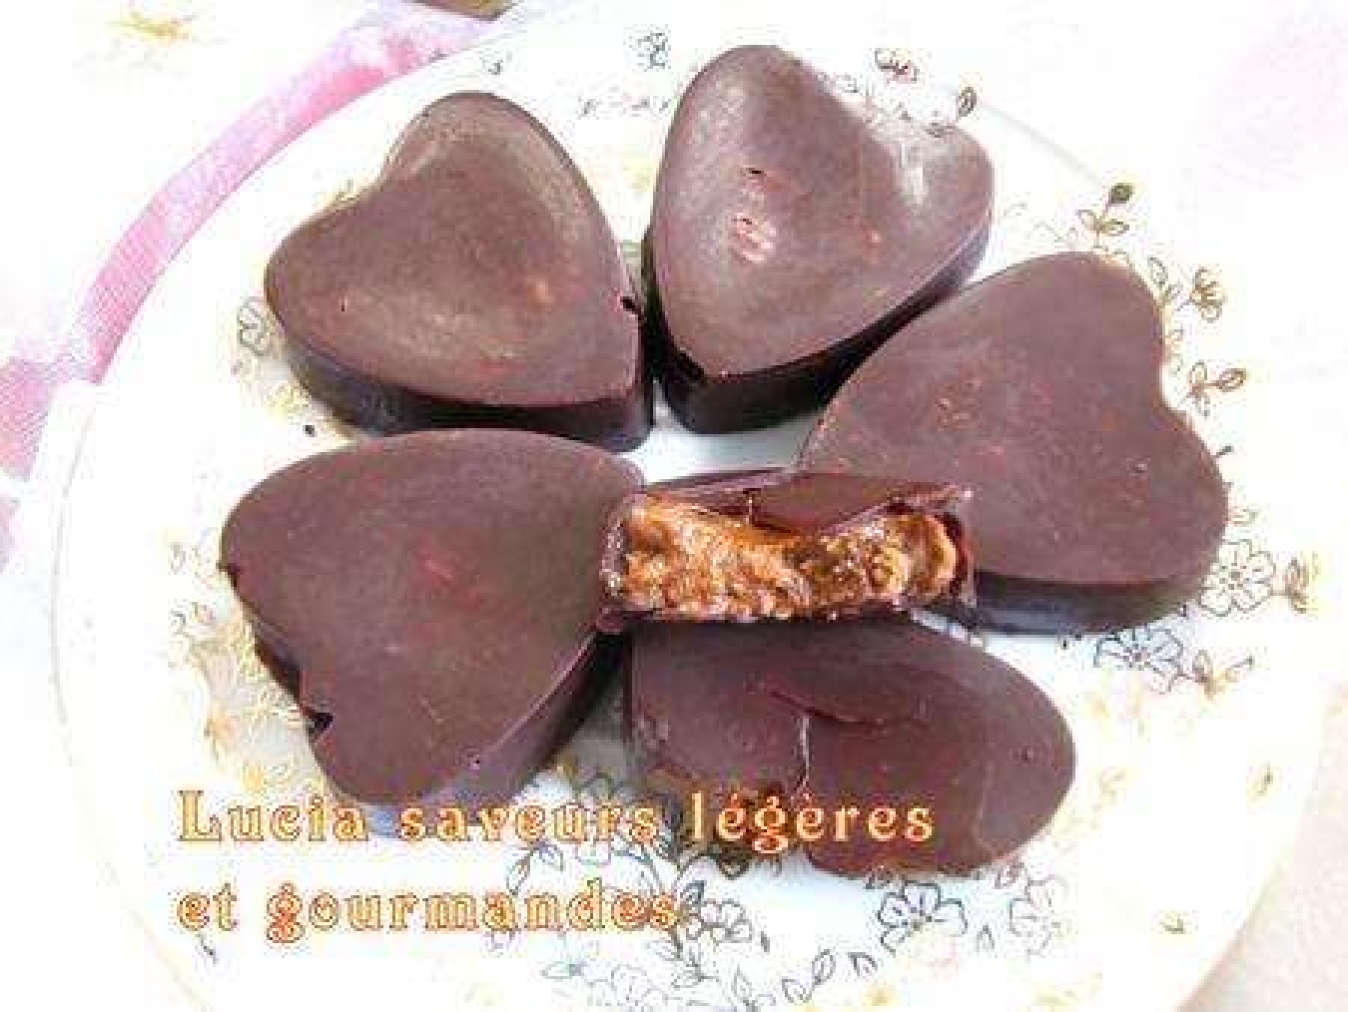 La recette de Lucia saveurs : Chocolats fourrés aux amandes pralinées